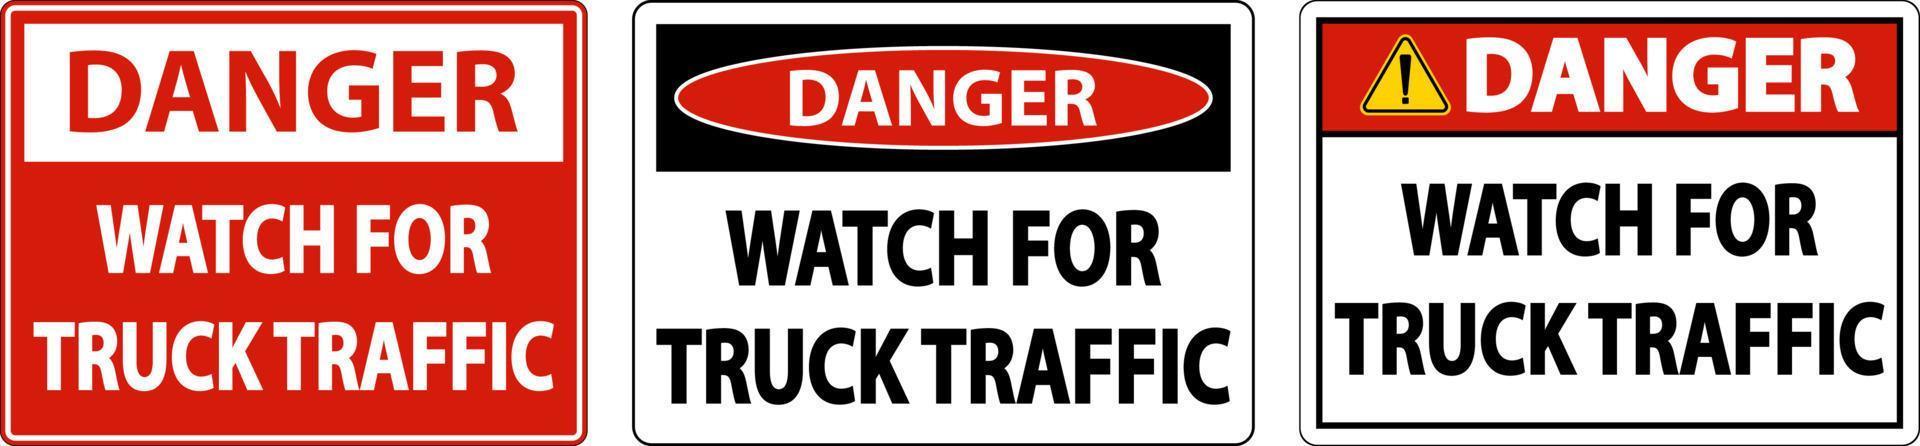 gevaar horloge voor vrachtwagen verkeersbord op witte achtergrond vector